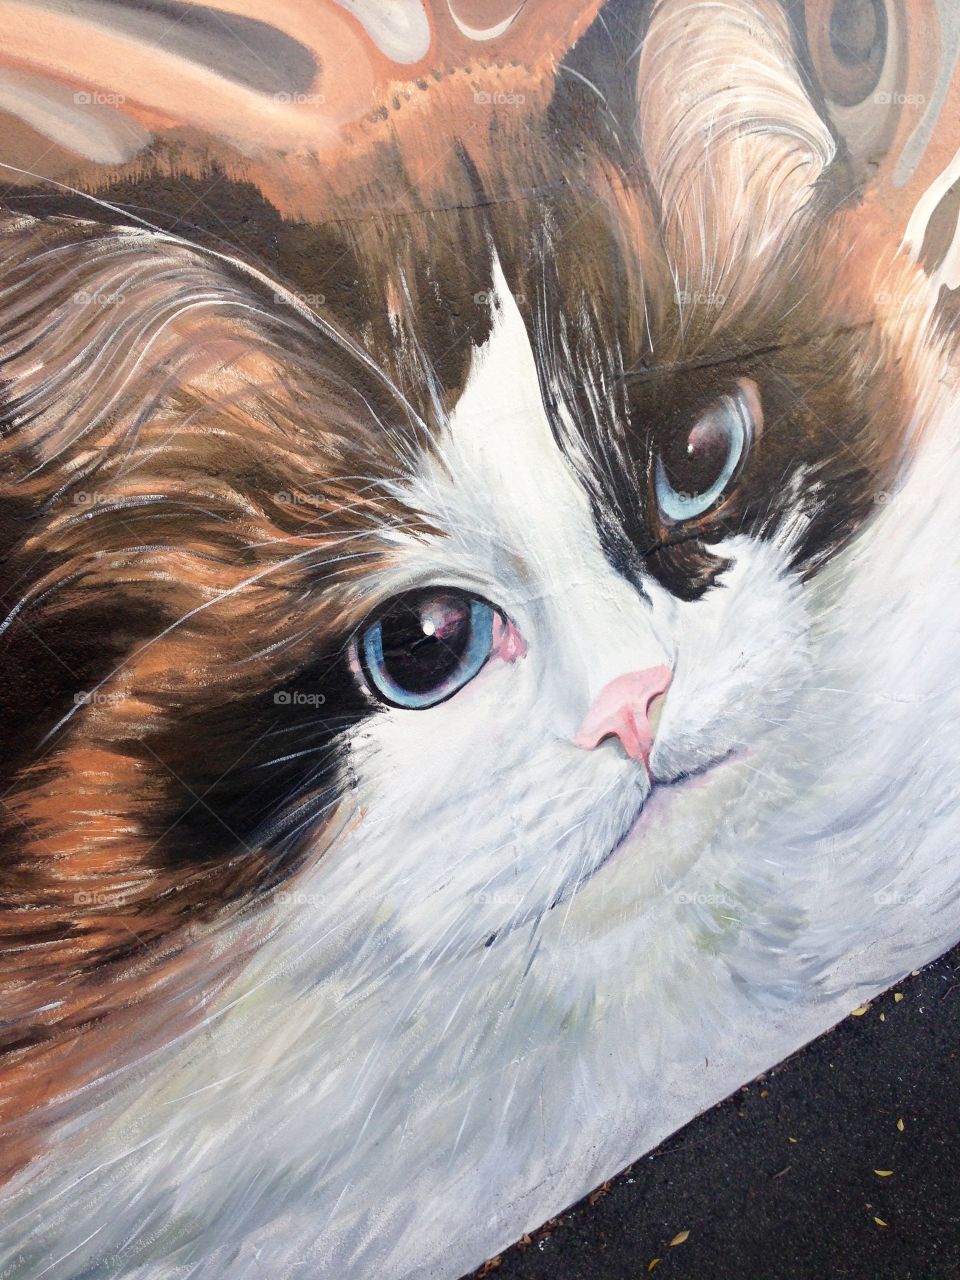 Painting cat 